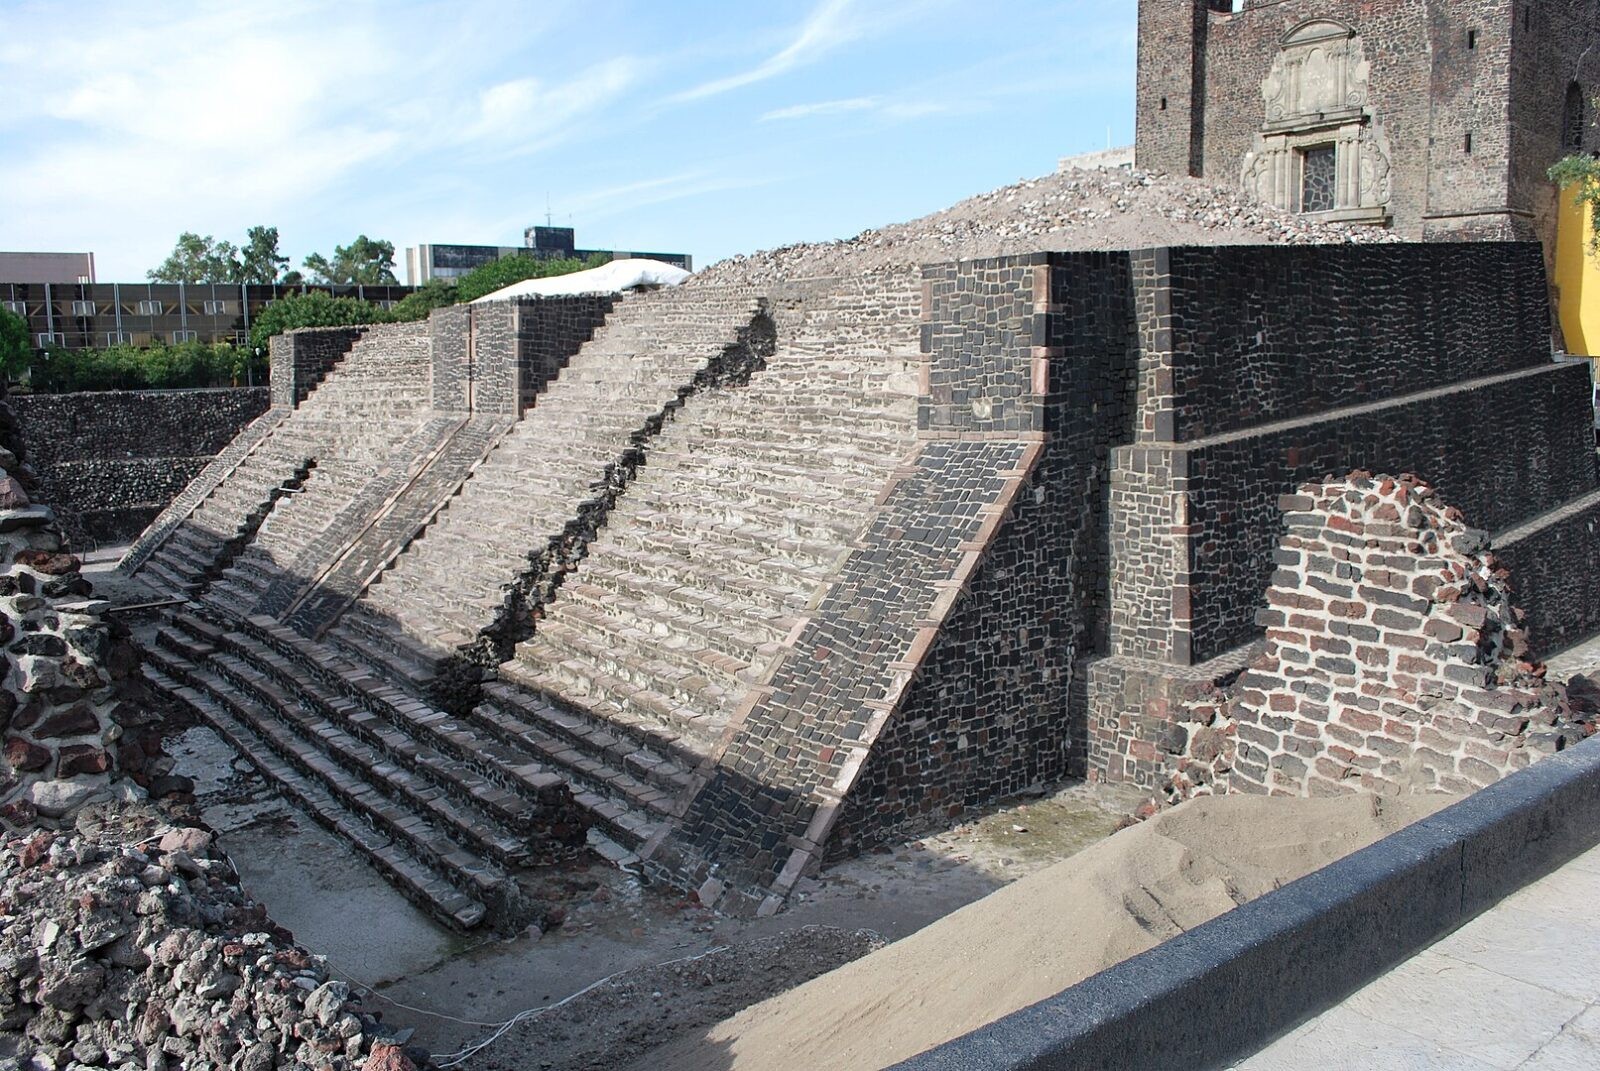 Kamienna skrzynia w dawnej świątyni. Prekolumbijski lud wciąż zastanawia archeologów